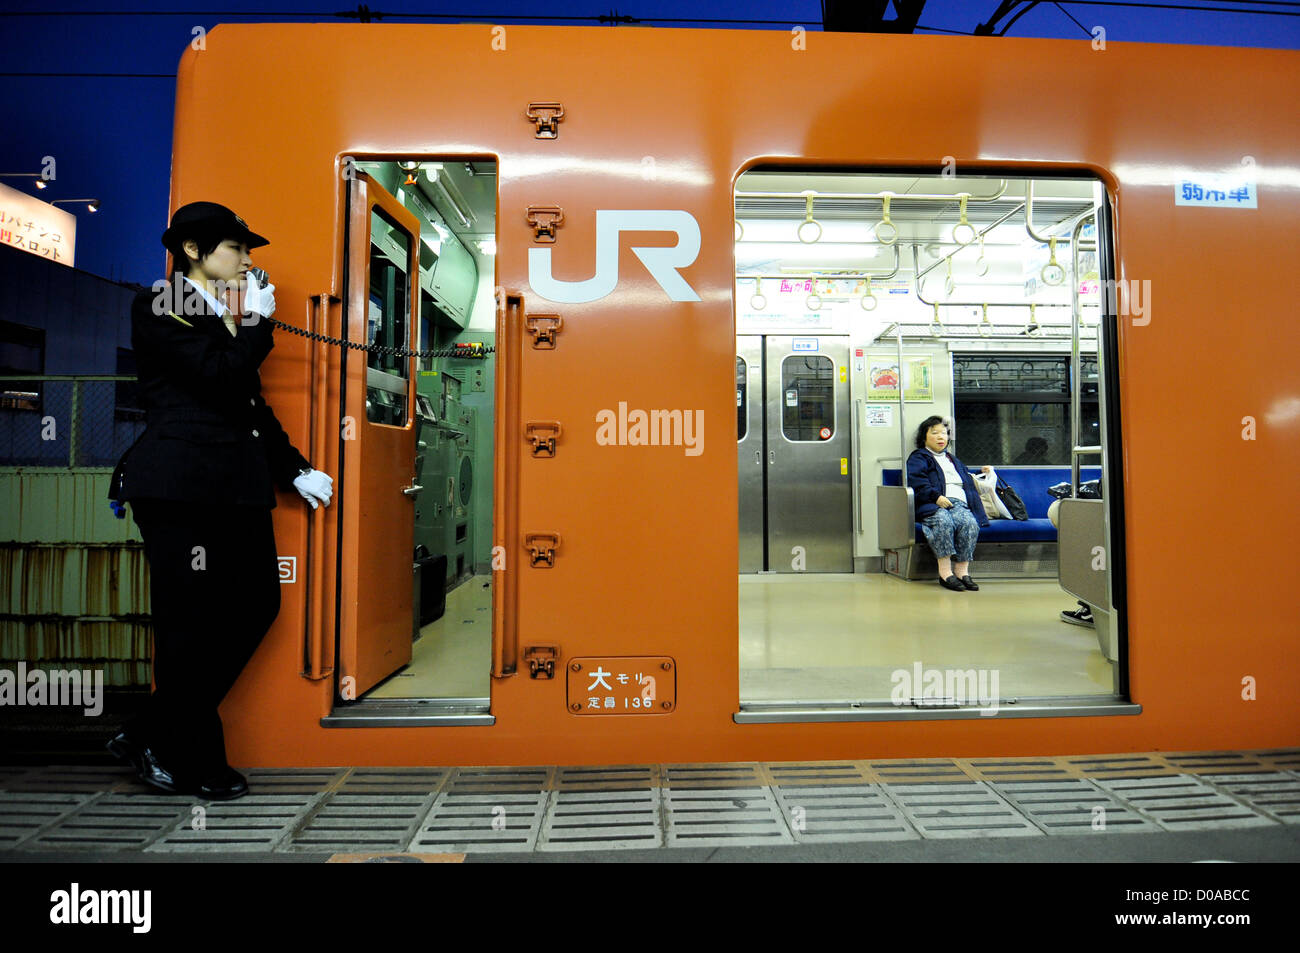 Una serie 103 sul treno Osaka la linea loop. La serie 103 è stato ritirato dalla linea loop il 3 ottobre, 2017. Foto Stock